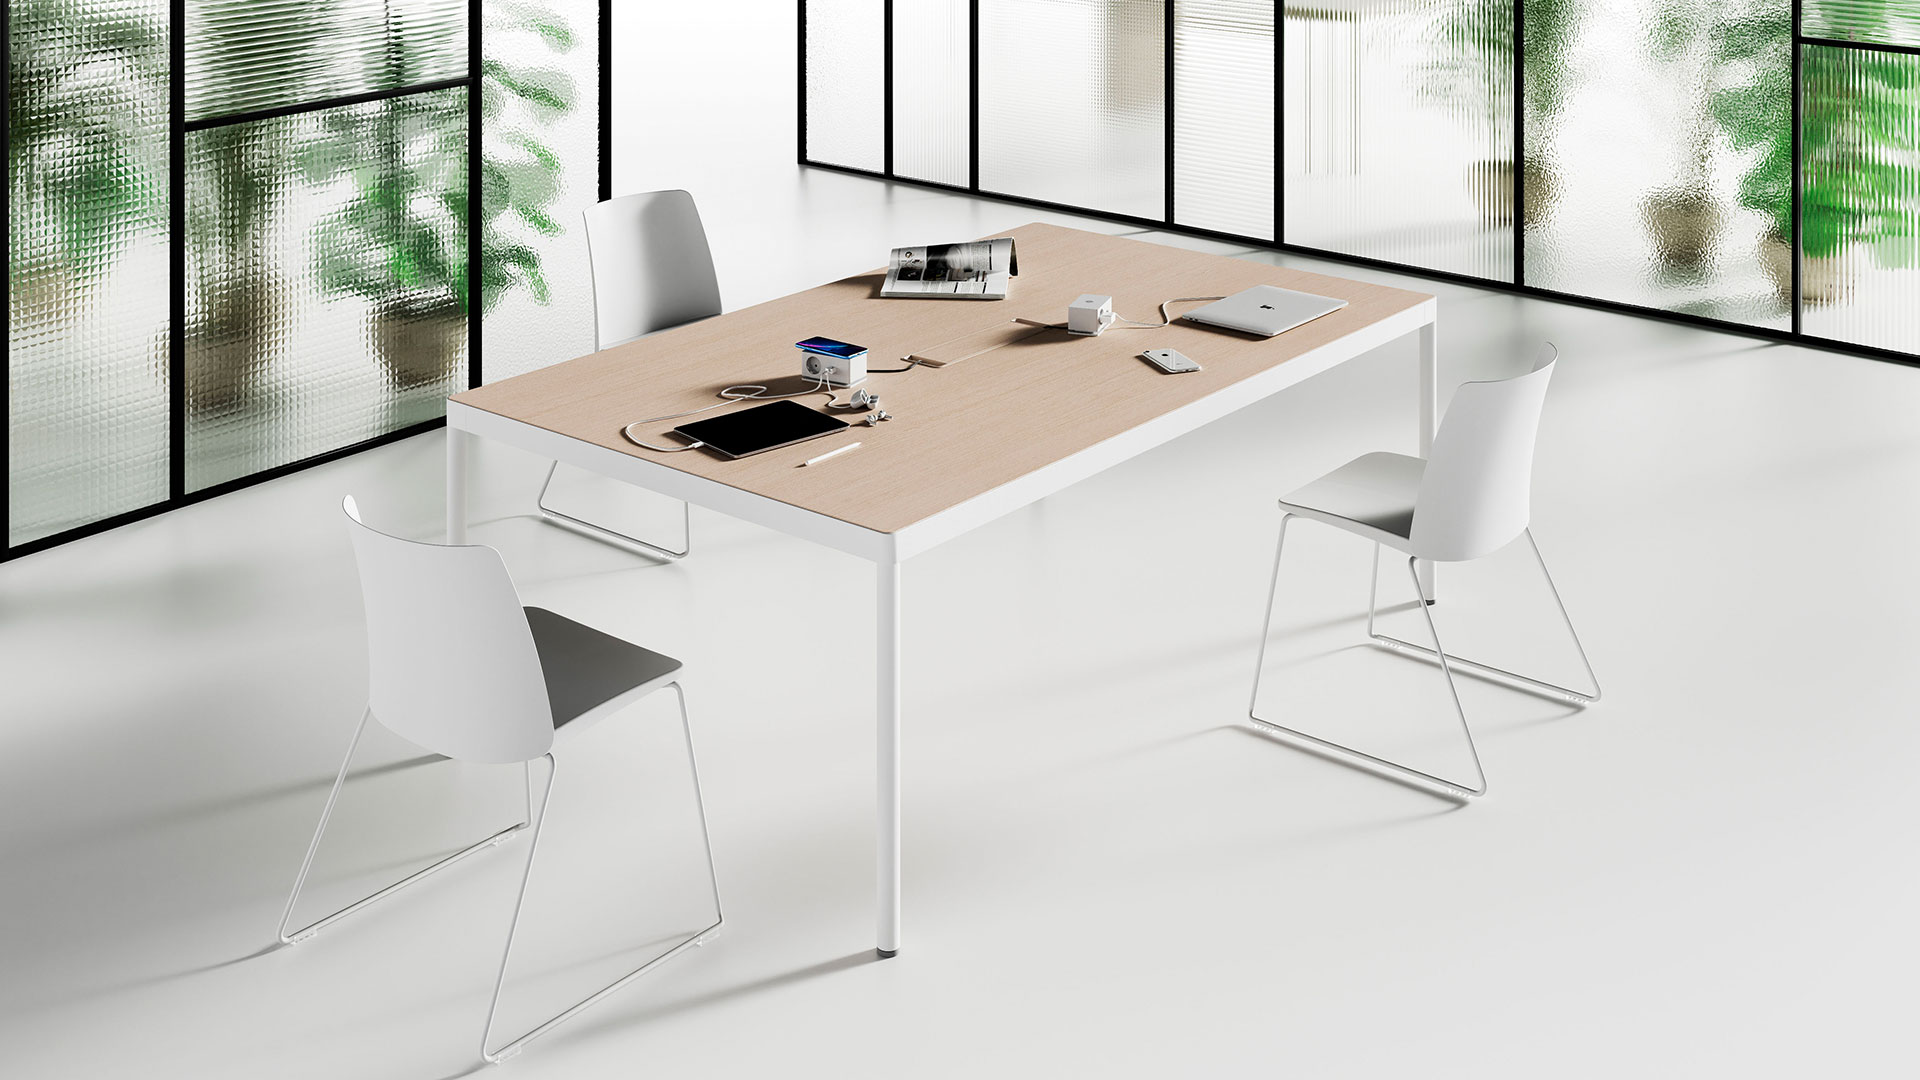 Столы Team Tables идеальны для переговоров и командной работы